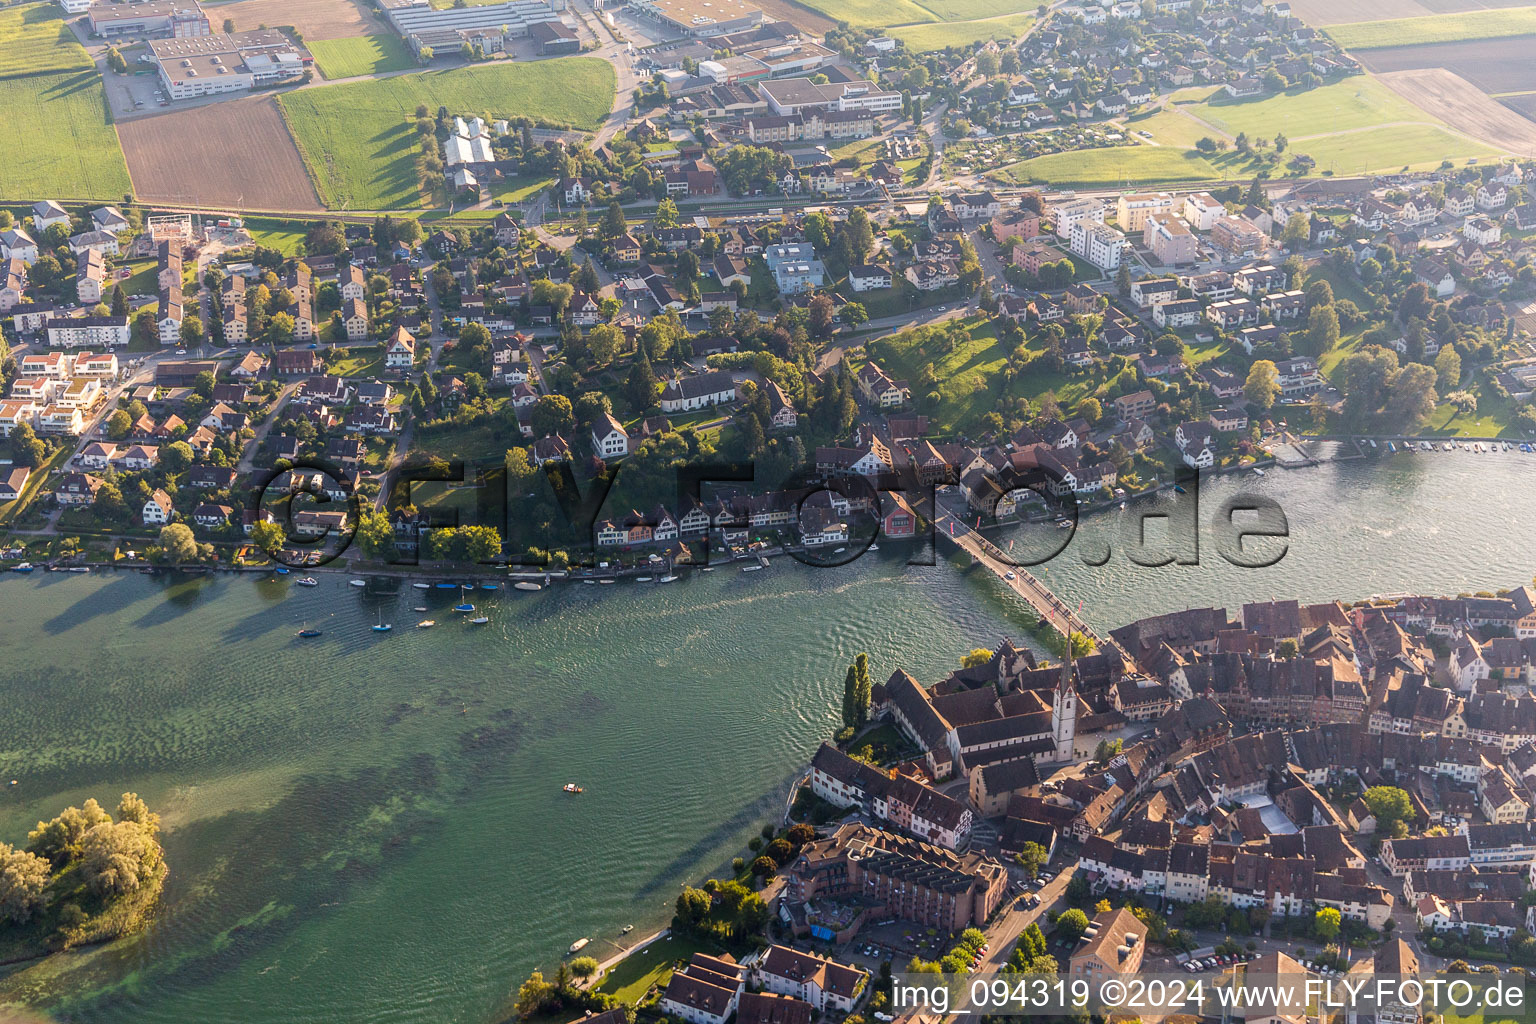 Aerial view of River - bridge construction across the Rhine in Stein am Rhein in the canton Schaffhausen, Switzerland